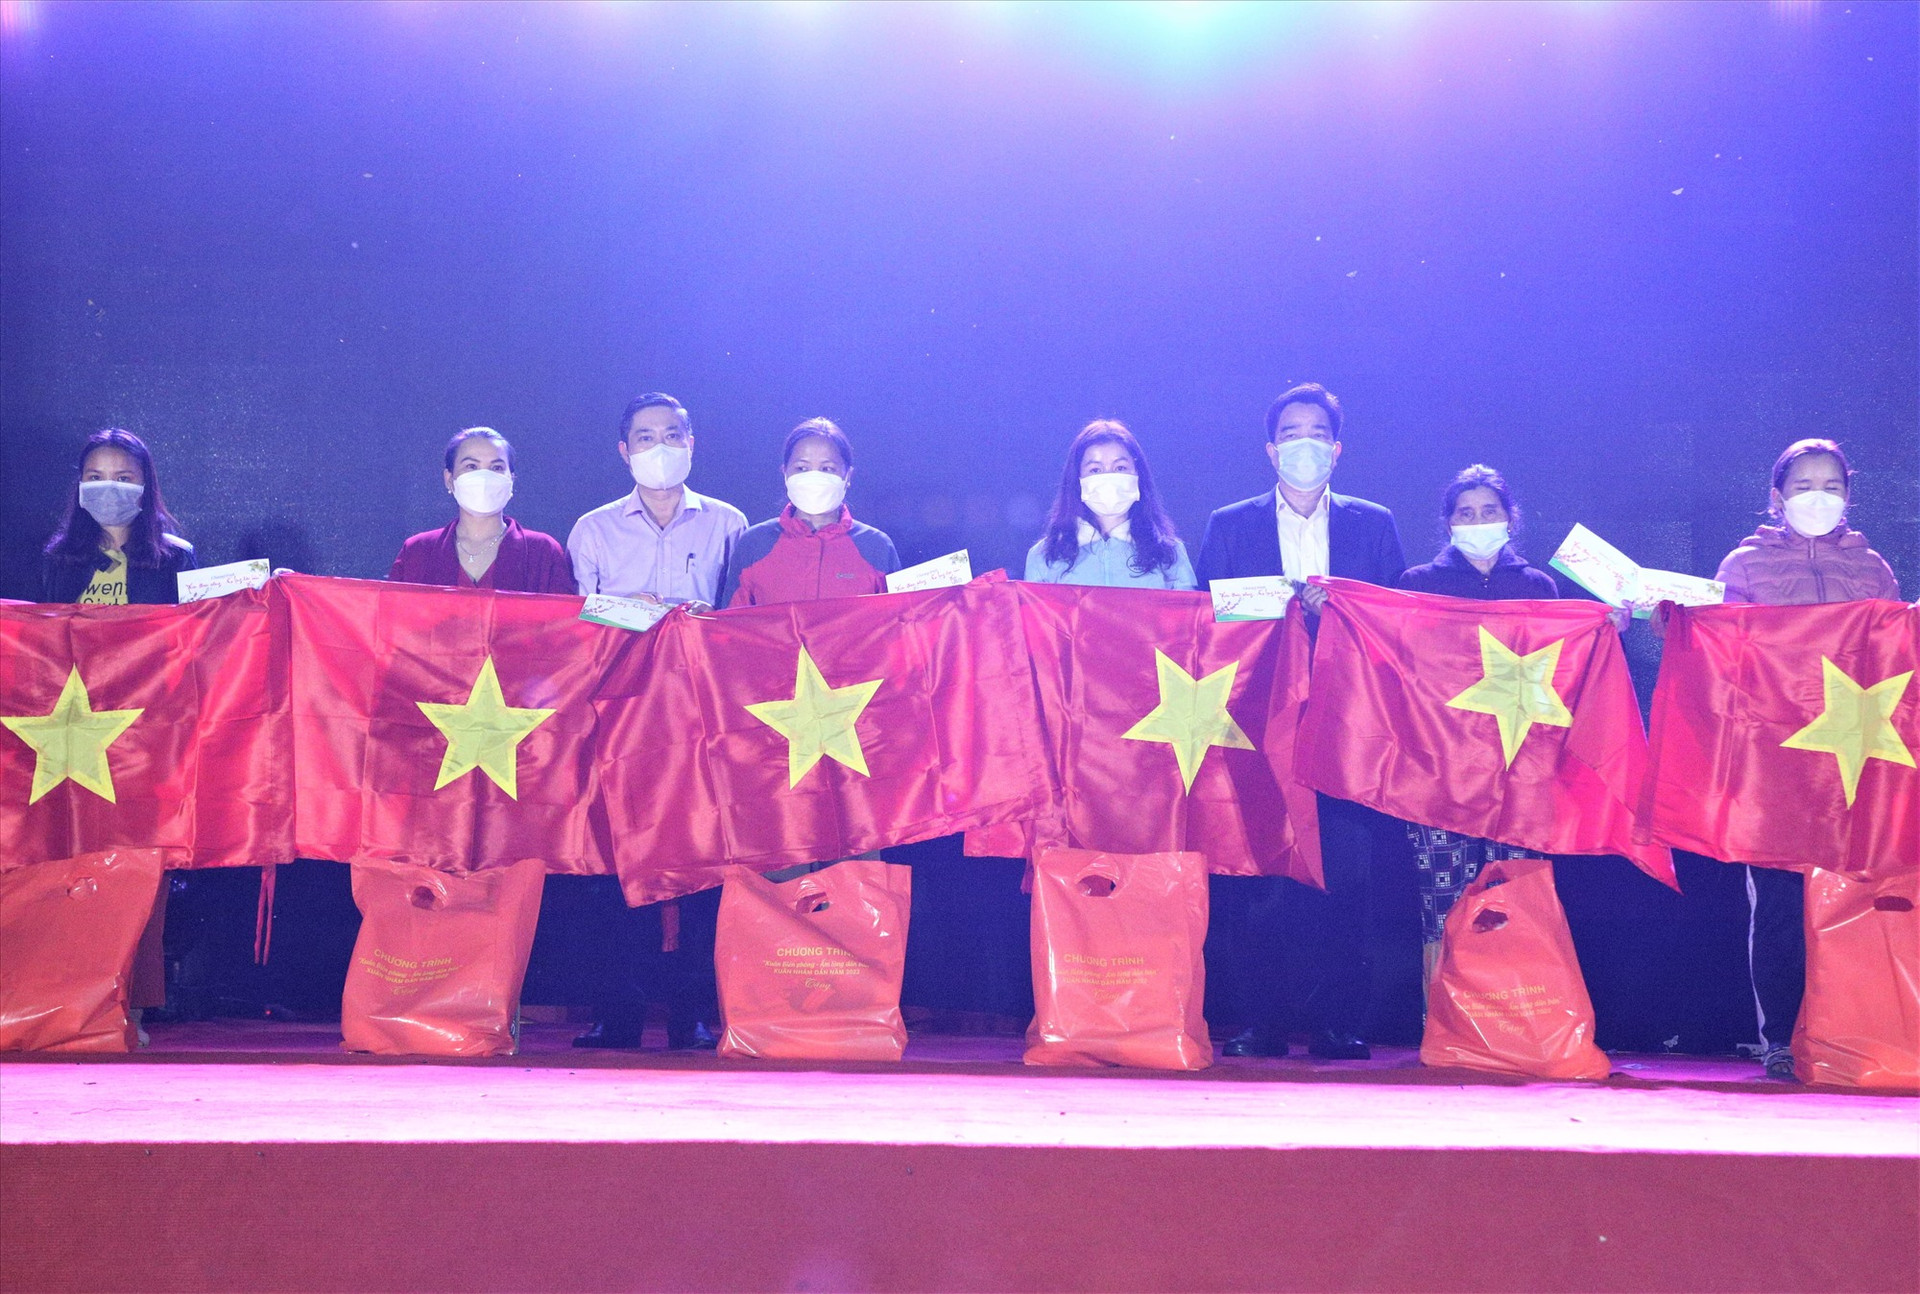 Lãnh đạo tỉnh trao cờ Tổ quốc cho người dân nhân chương trình “Xuân biên phòng - Ấm lòng dân bản” tổ chức vào tối qua 23.1. Ảnh: A.N